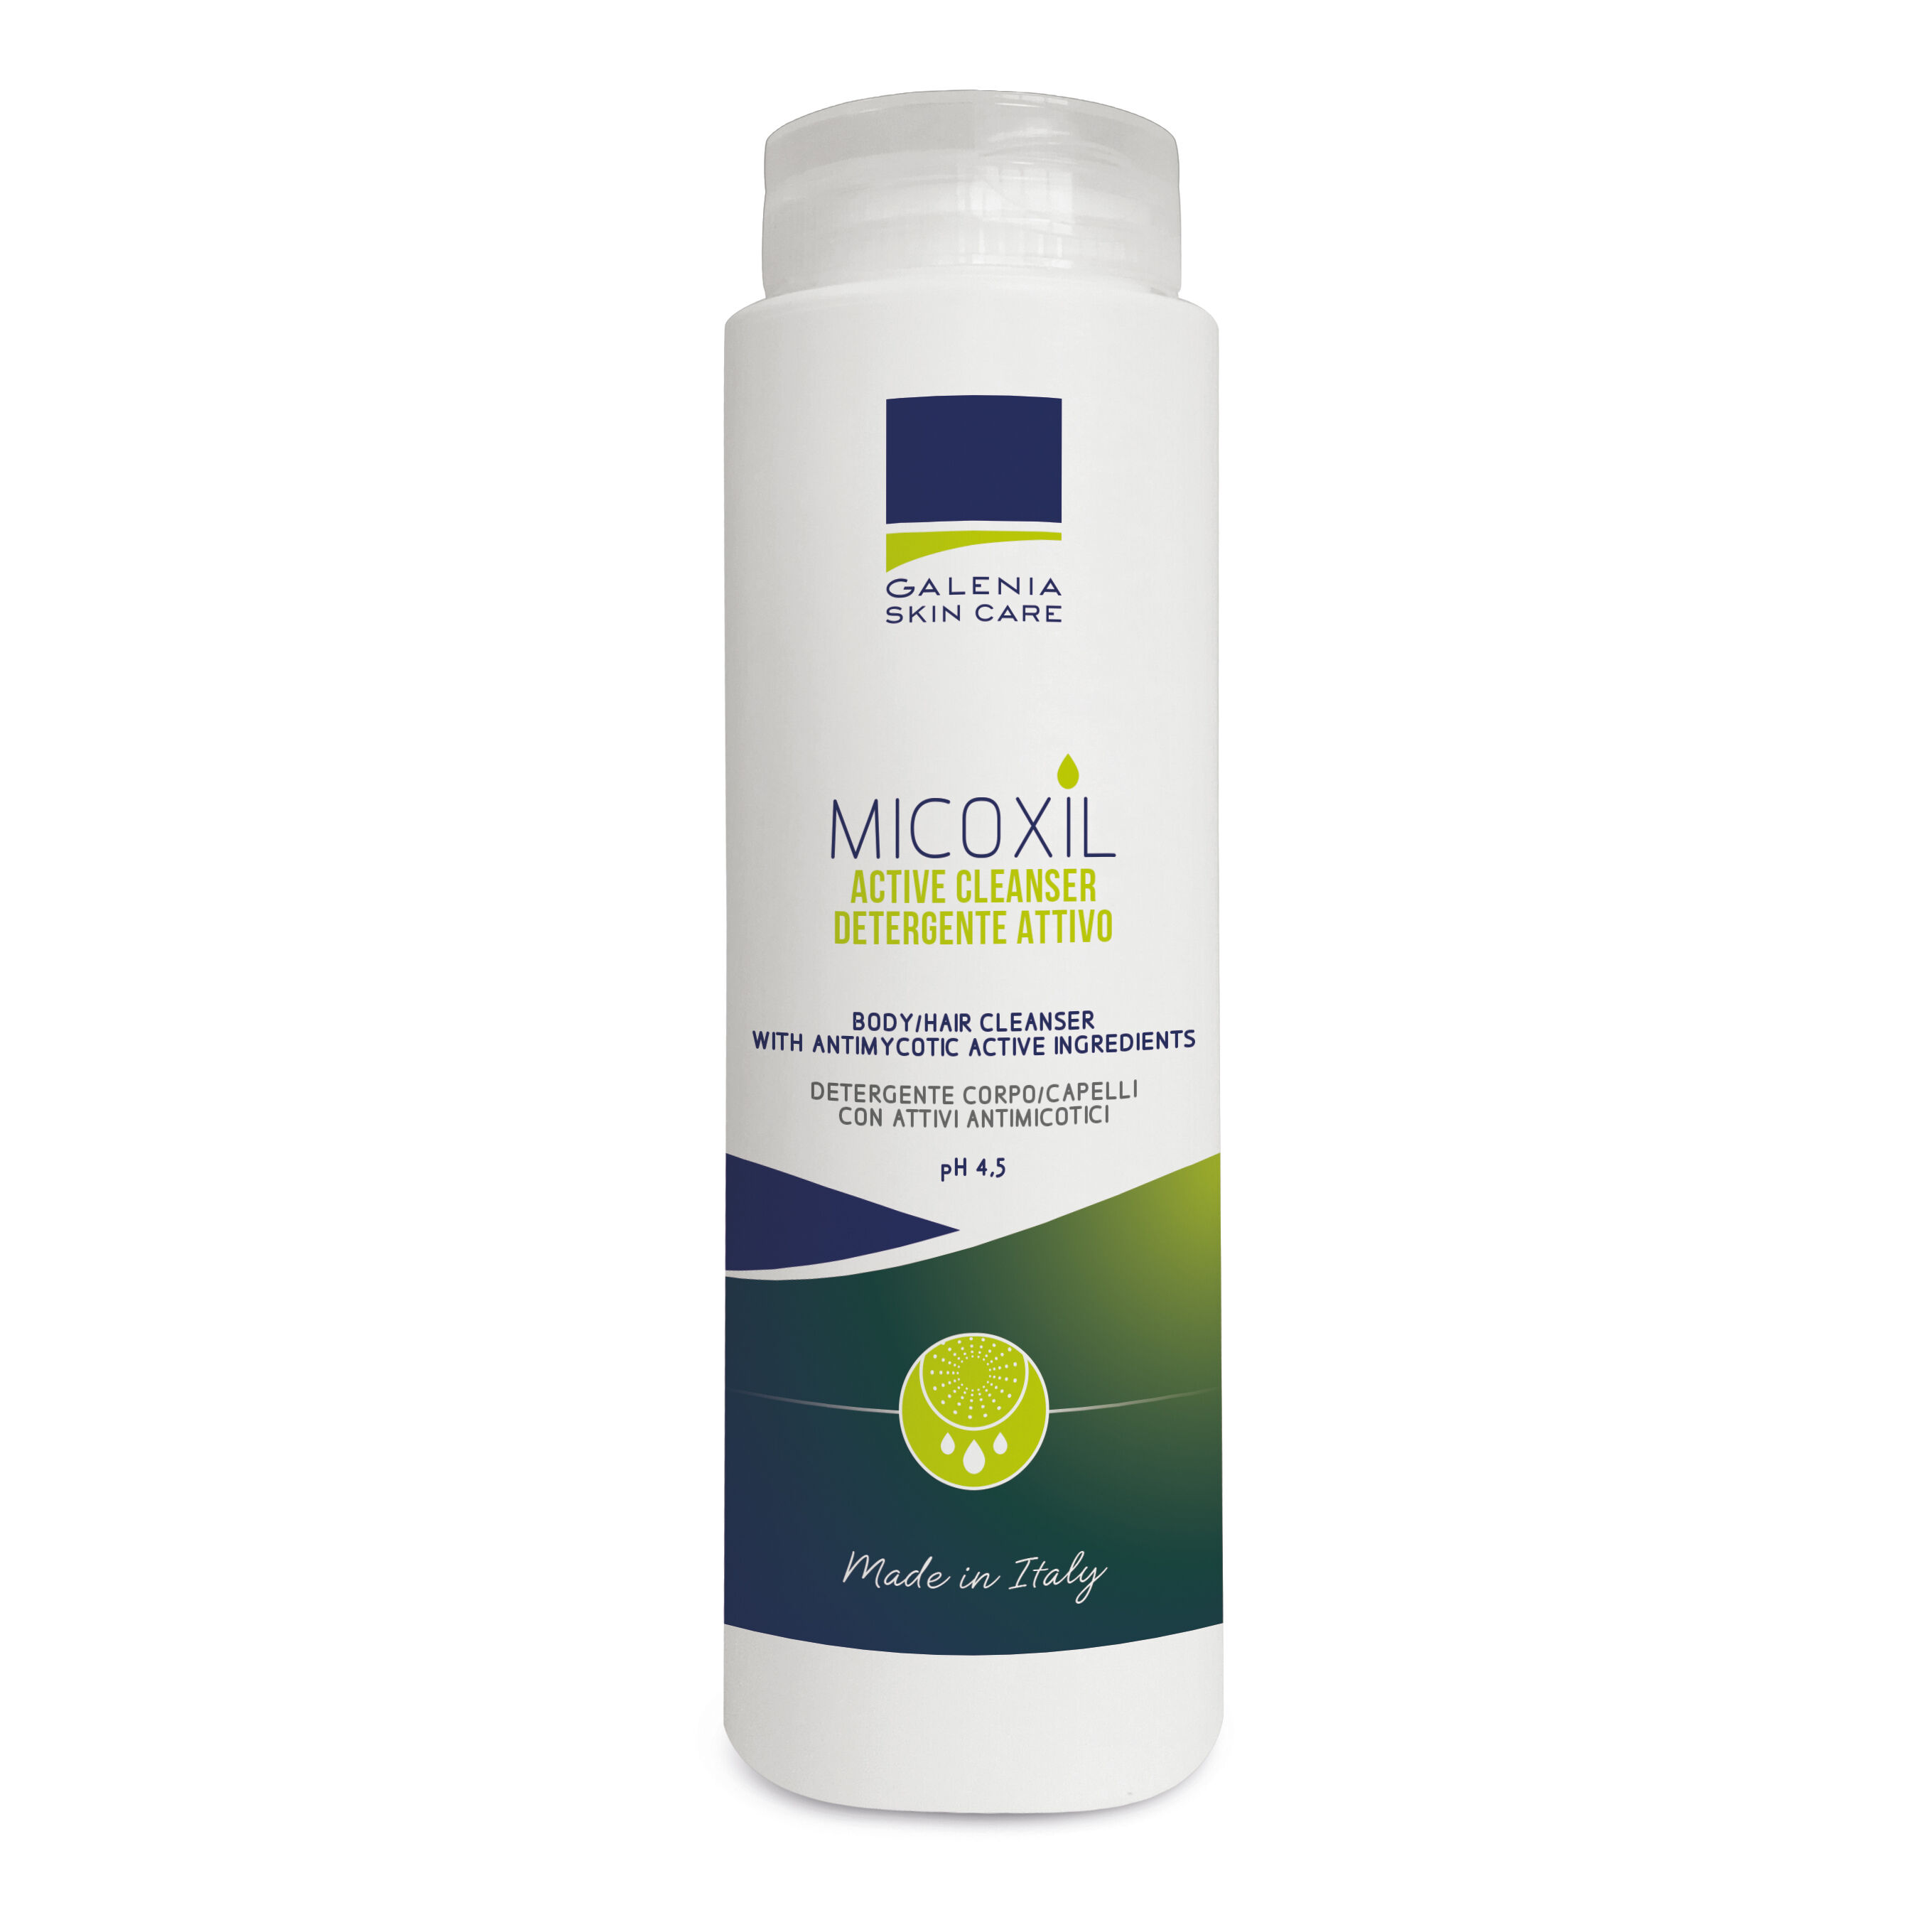 galenia biotecnologie srl micoxil active cleanser detergente per corpo e capelli ph 4,5 250 ml